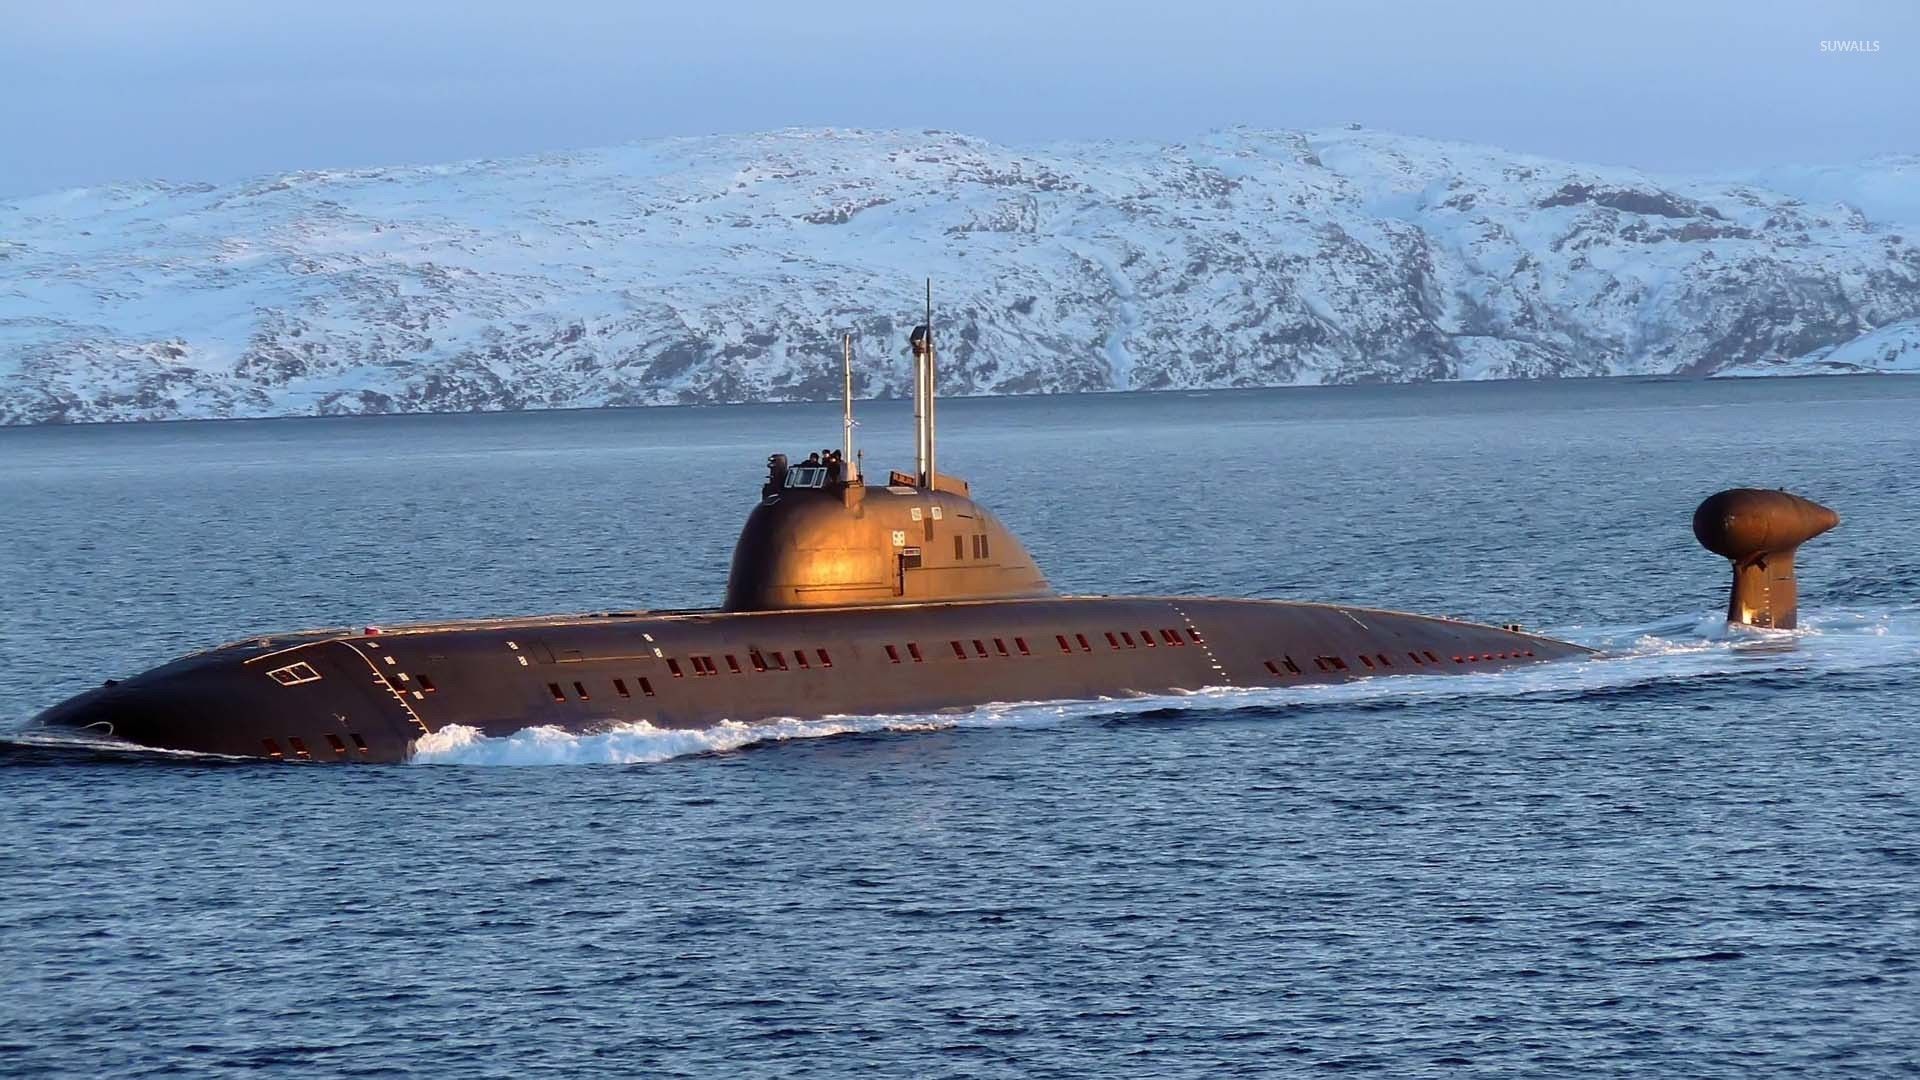  تصویر جذاب و دیدنی از زیردریایی بزرگ و بلند 